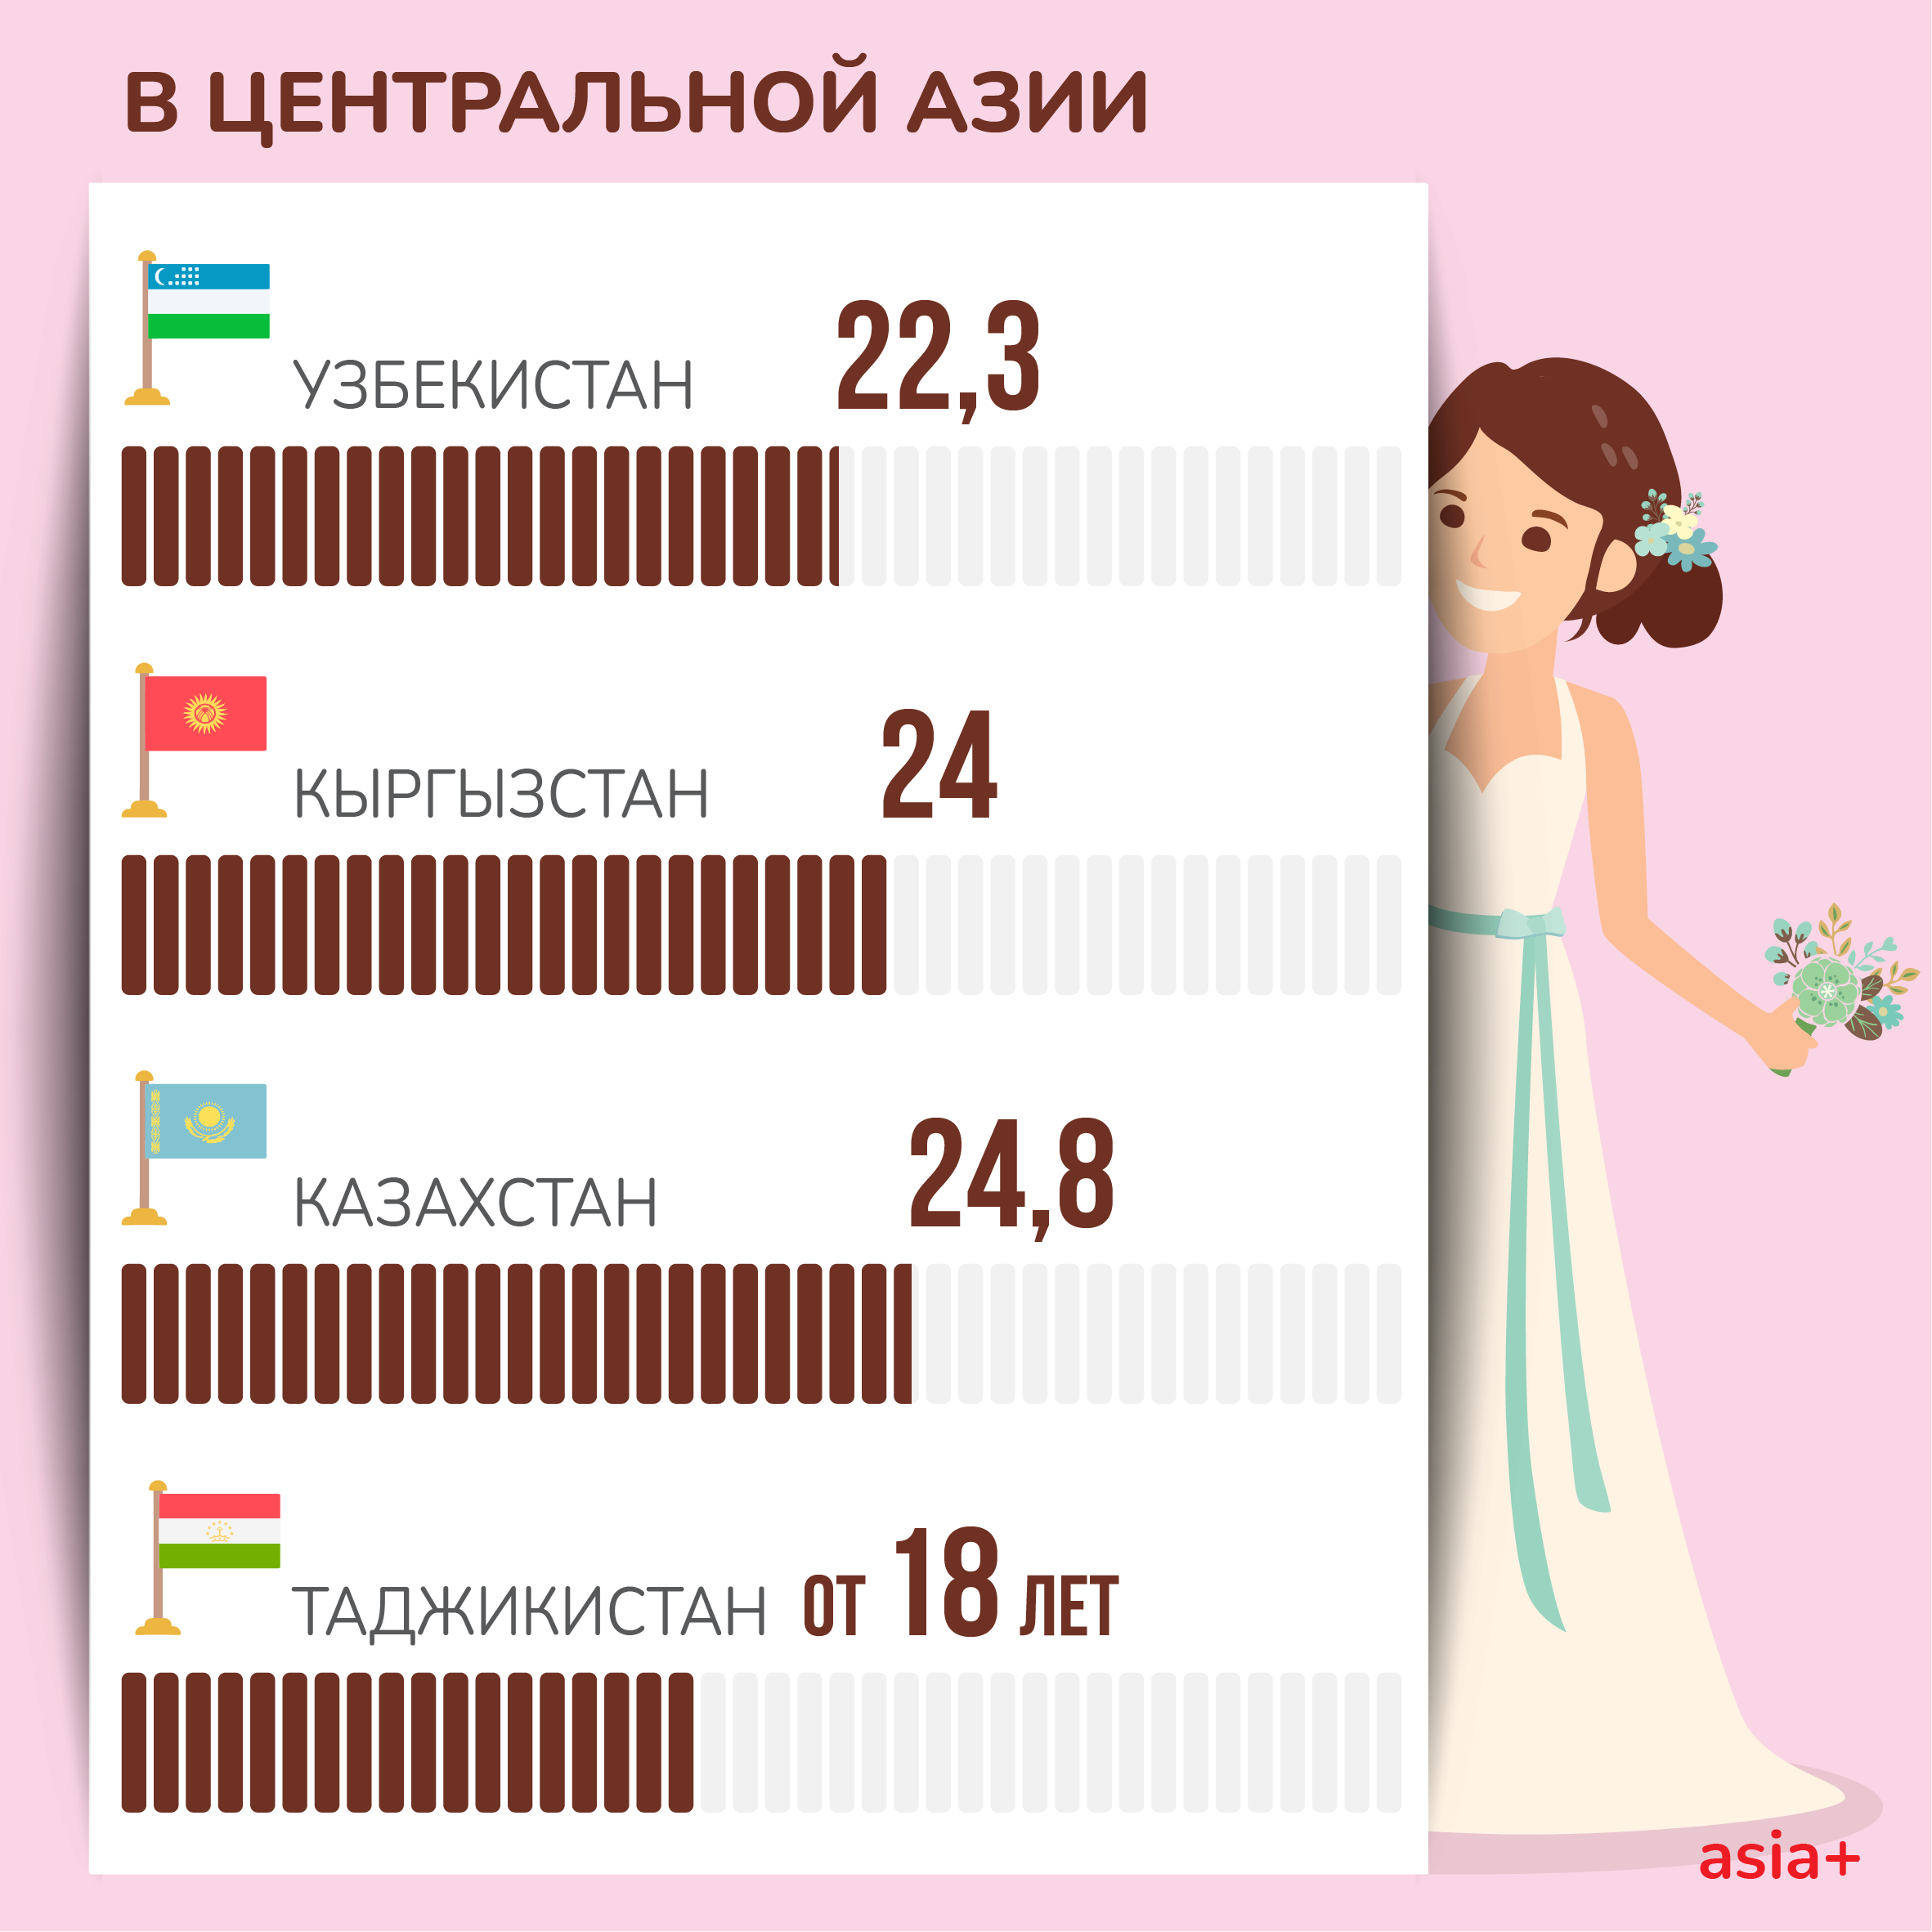 В каком возрасте женщины в Таджикистане и мире предпочитают выходить замуж? 